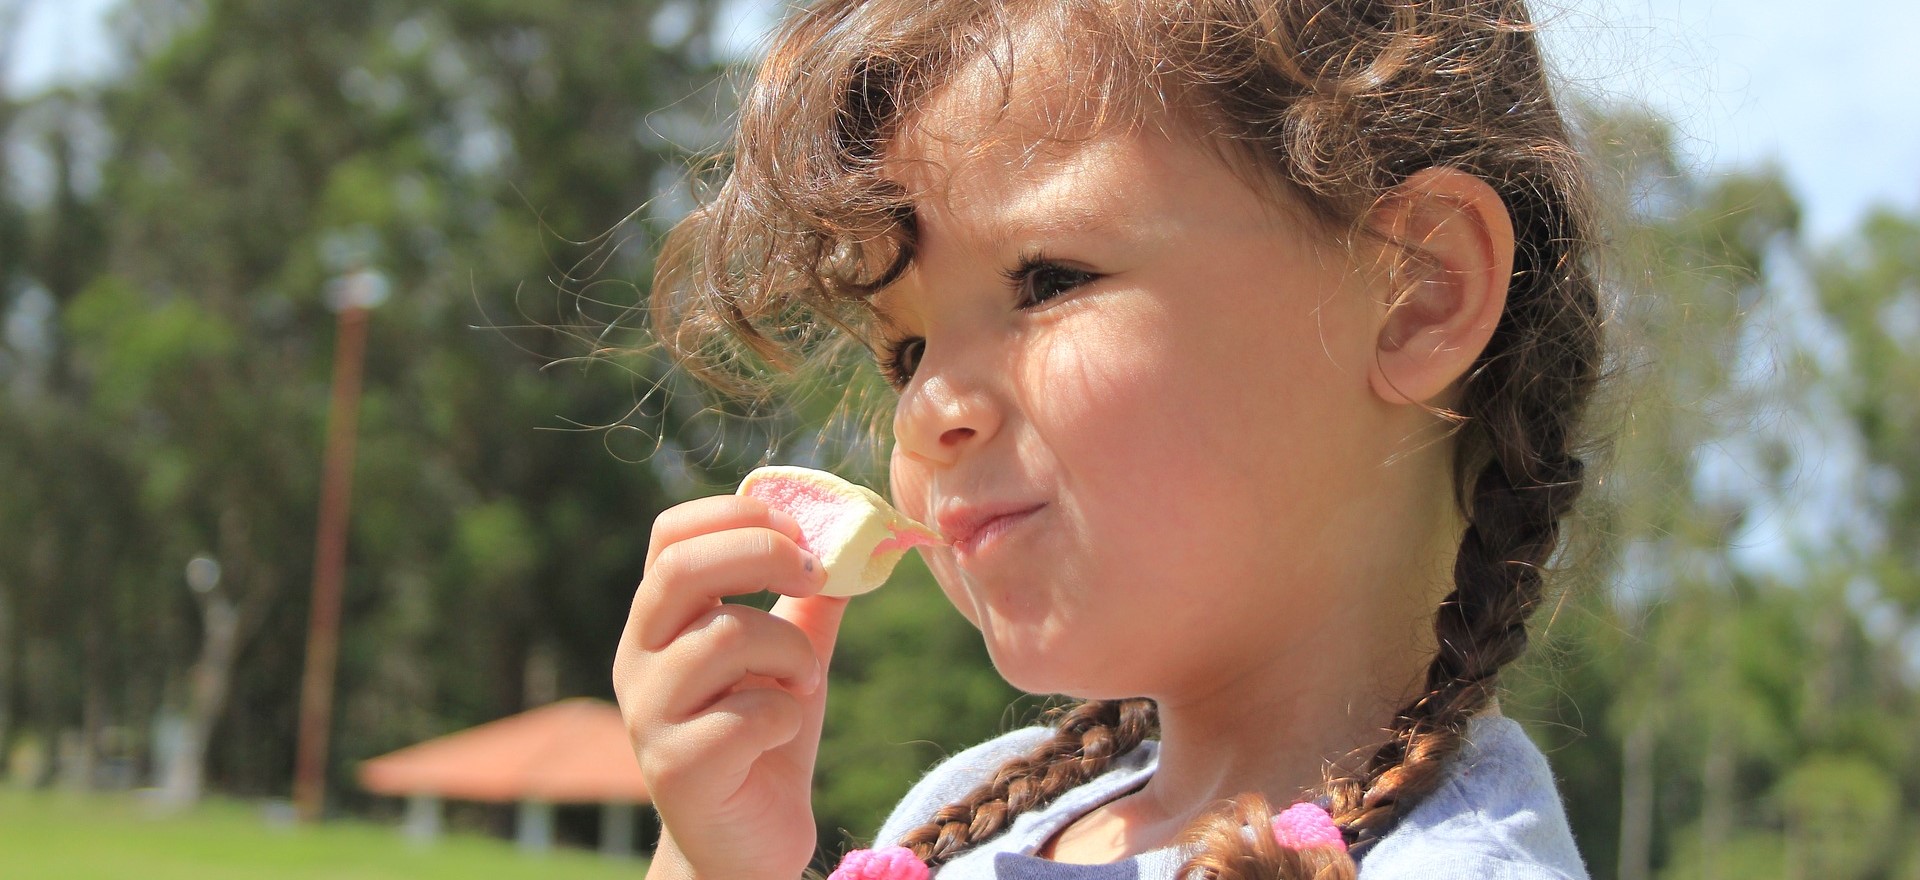 Little Girl Eating Marshmallow | Kids Car Donations